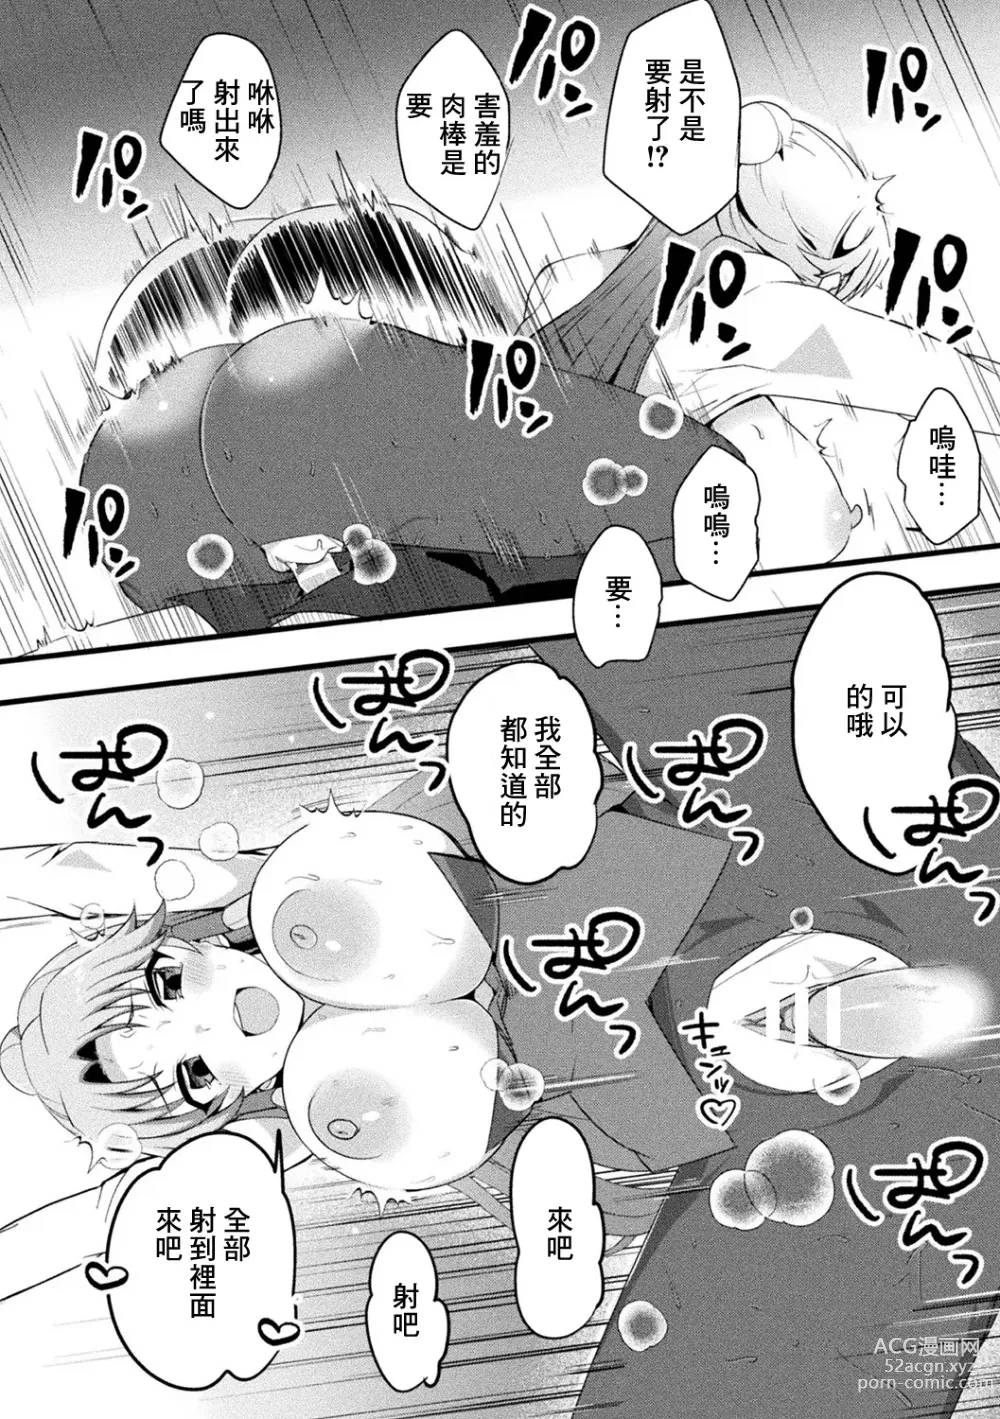 Page 14 of manga Mama Doko Doko - Mom! Where are you?